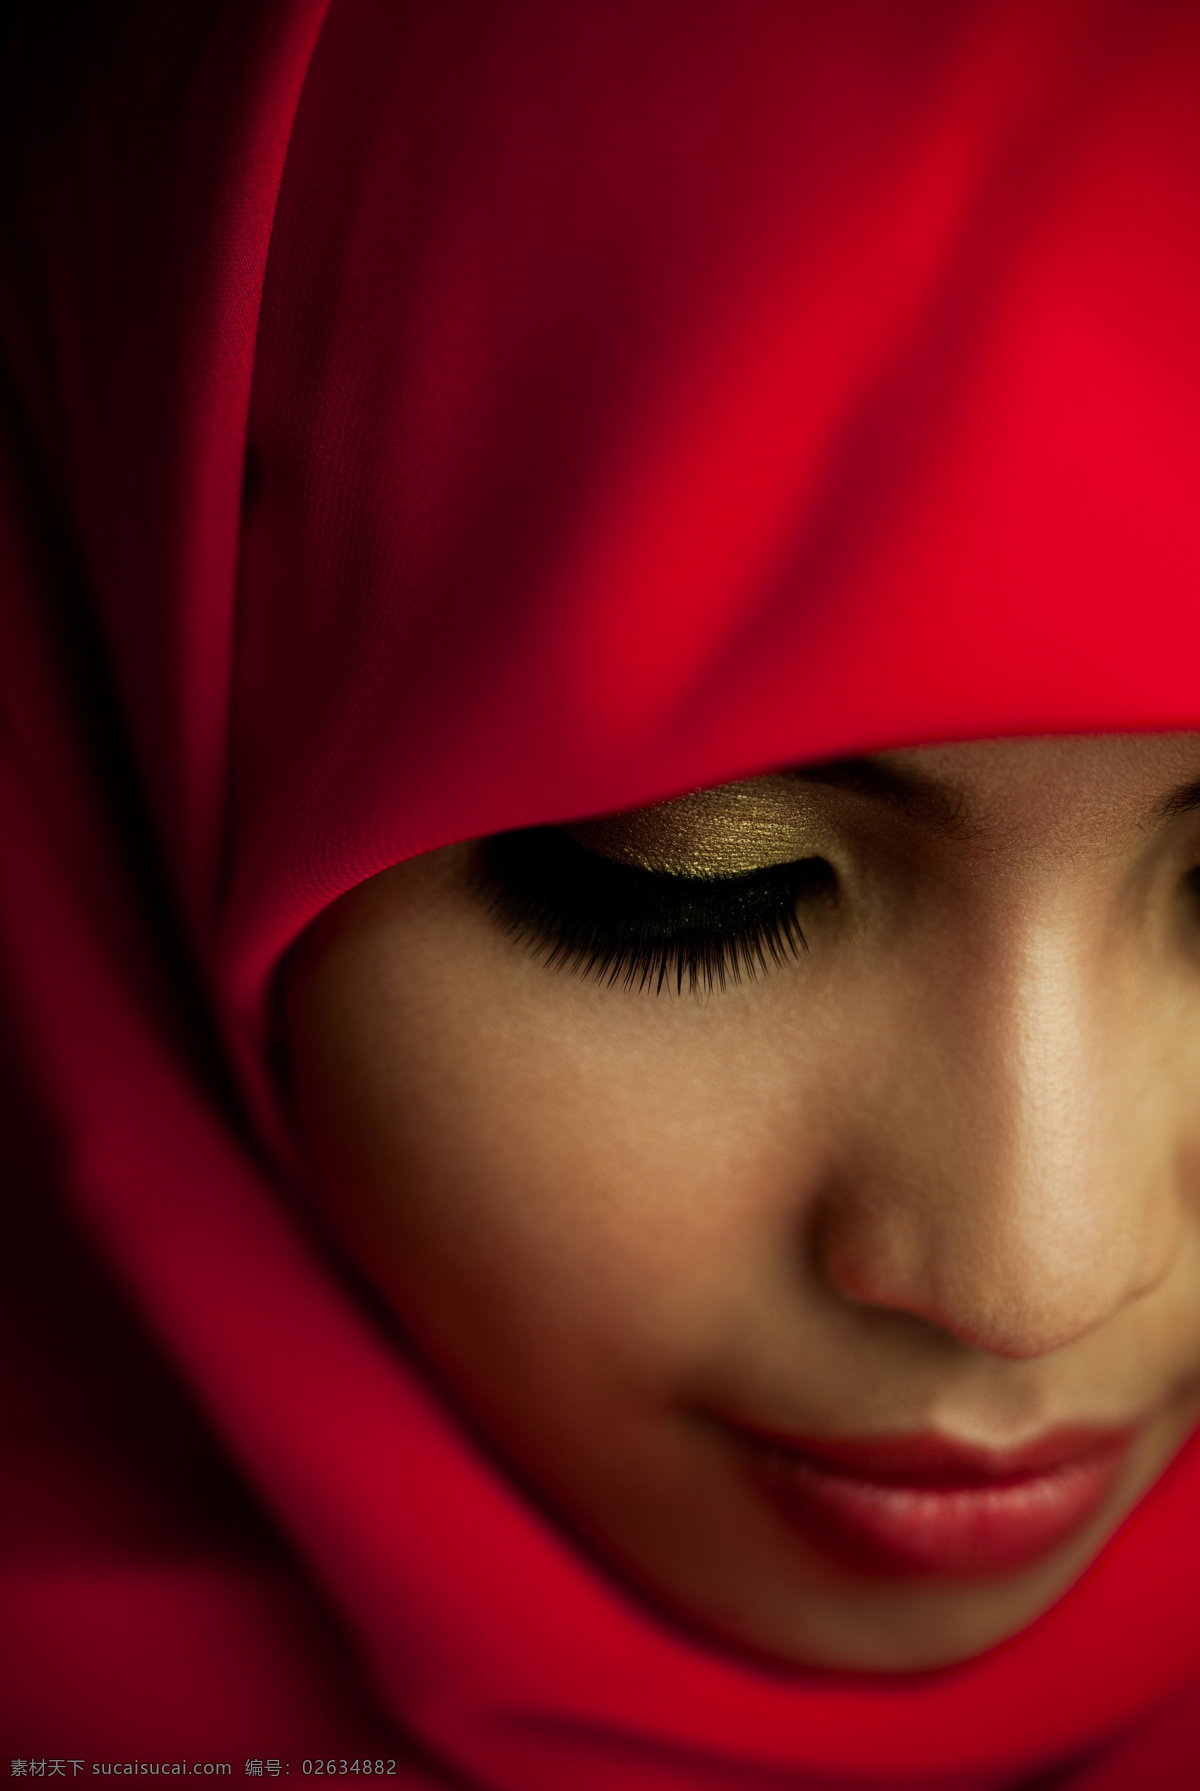 红色 头巾 下 闭眼 美女图片 红色头巾 美女 女人 眼睛 外国人物 人体器官图 人物图片